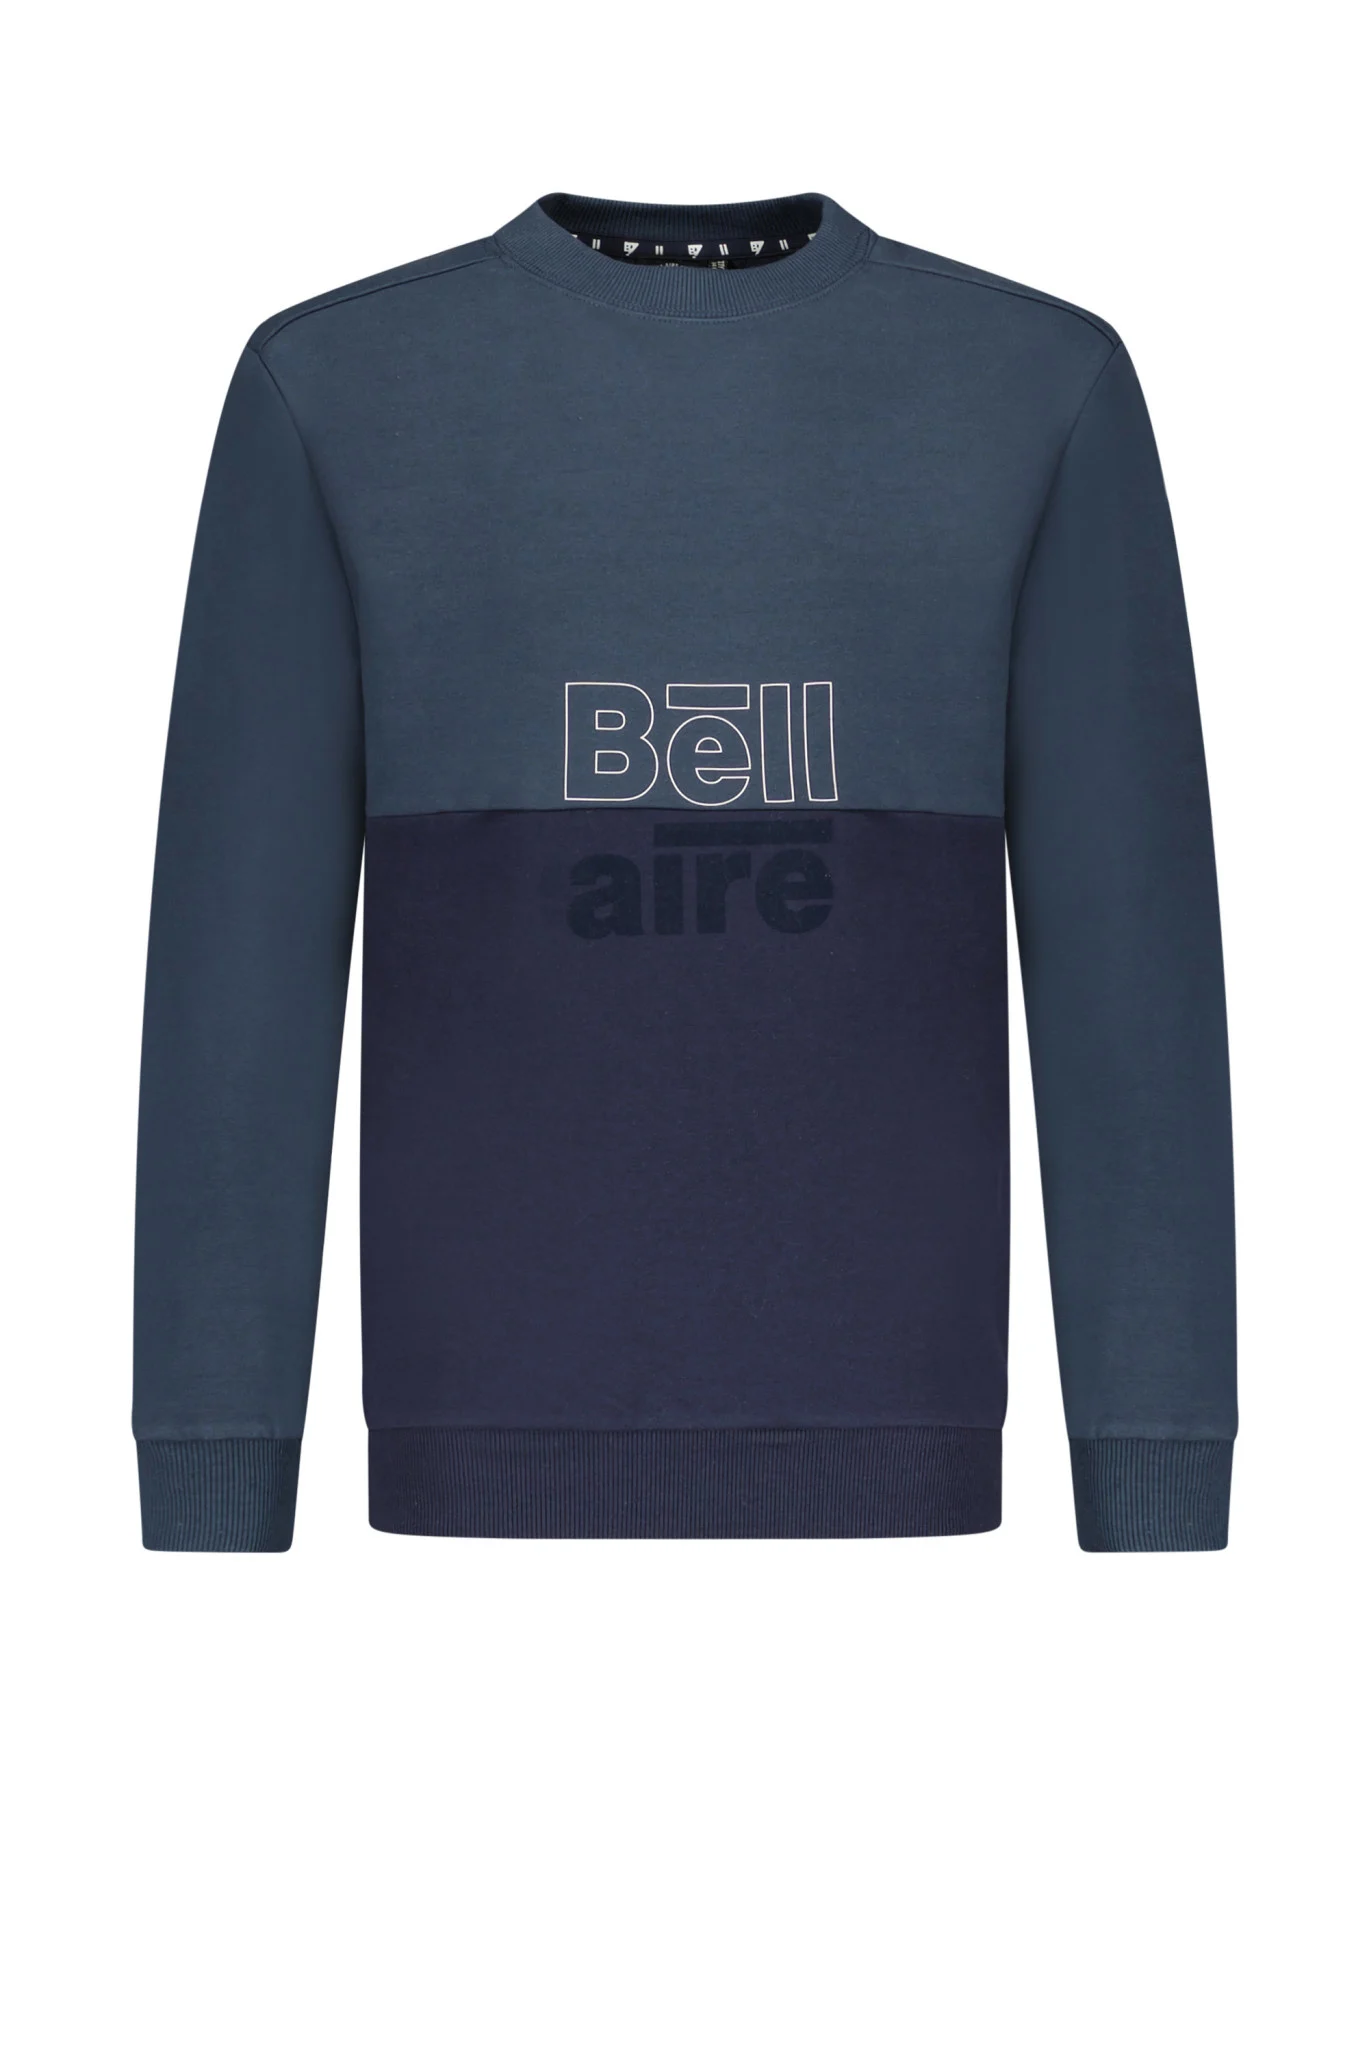 Afbeelding van Bellaire Jongens sweater ronde nek colorblock midnight